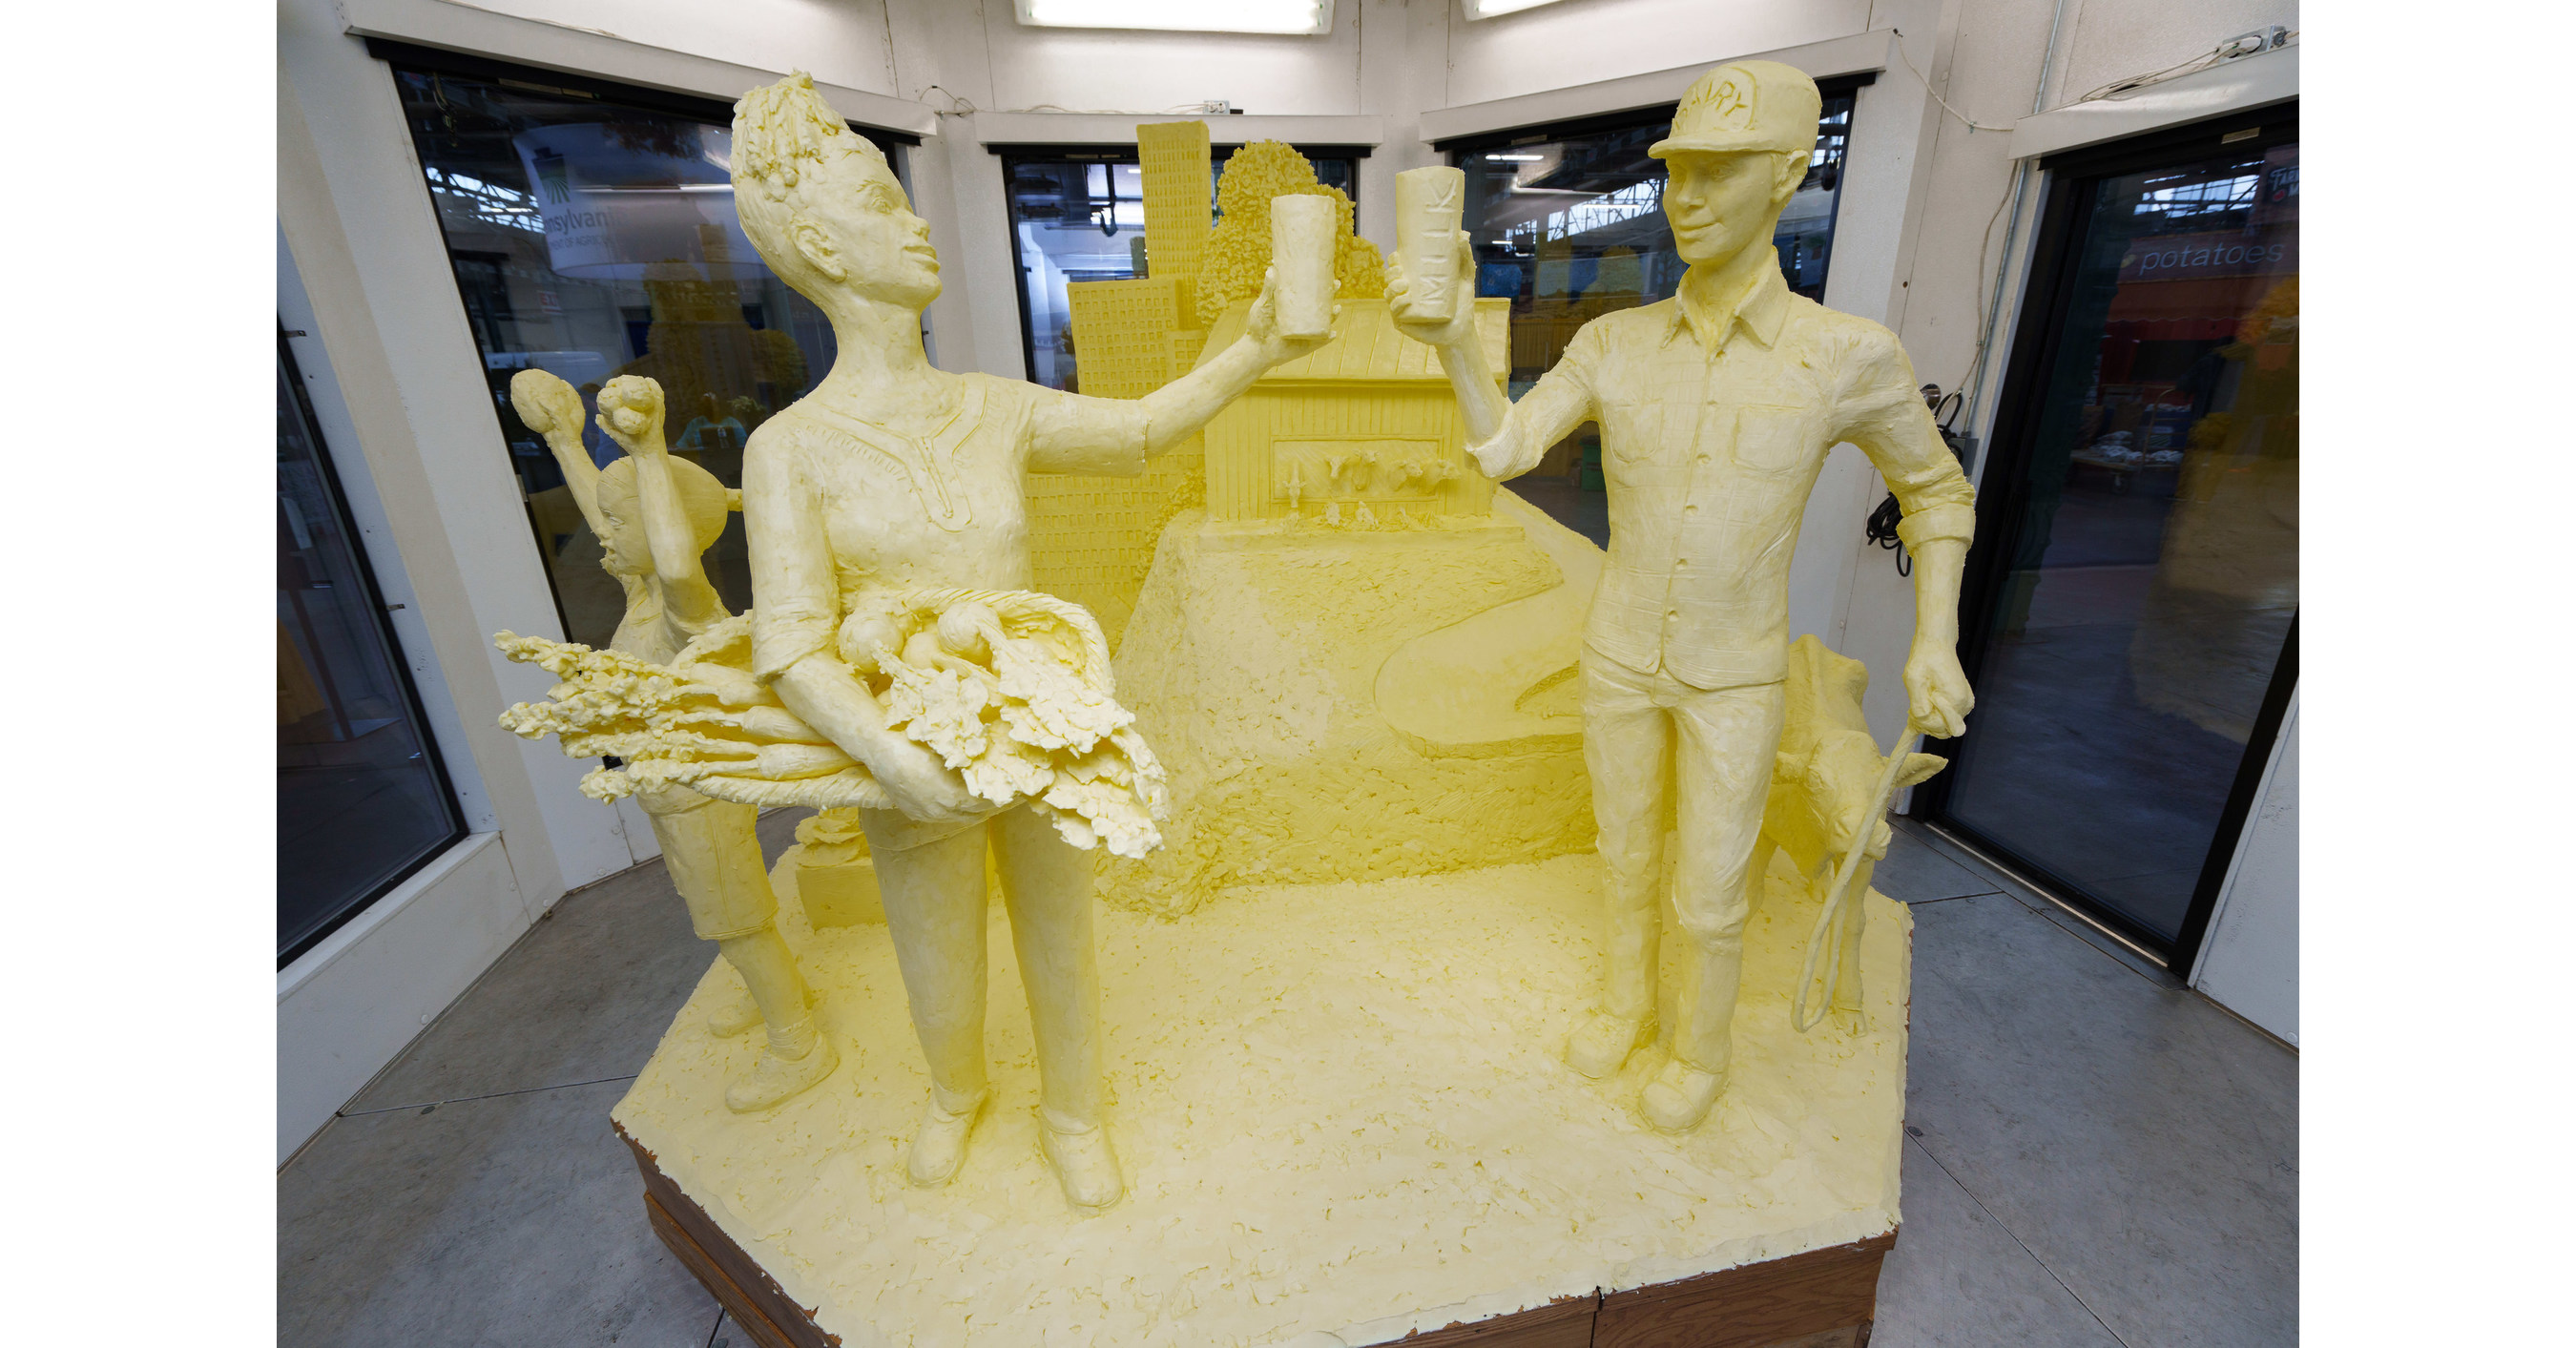 SPOILER ALERT: 2022 Fair butter sculpture revealed